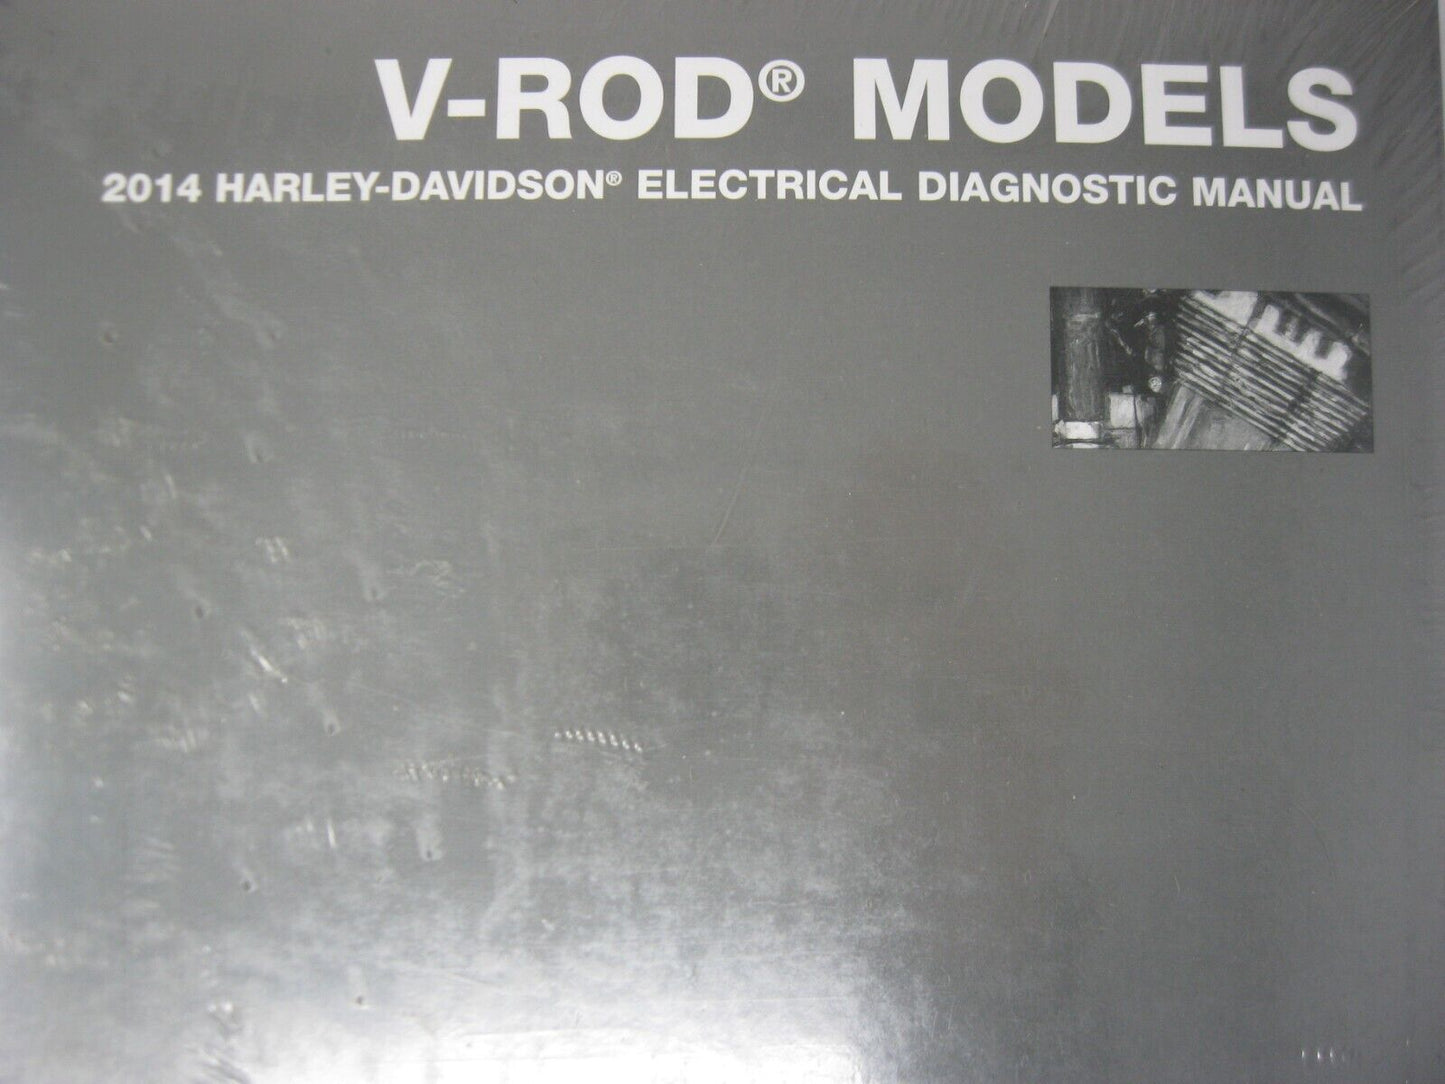 Harley-Davidson V-Rod Models 2014 Electrical Diagnostic Manual 99499-14